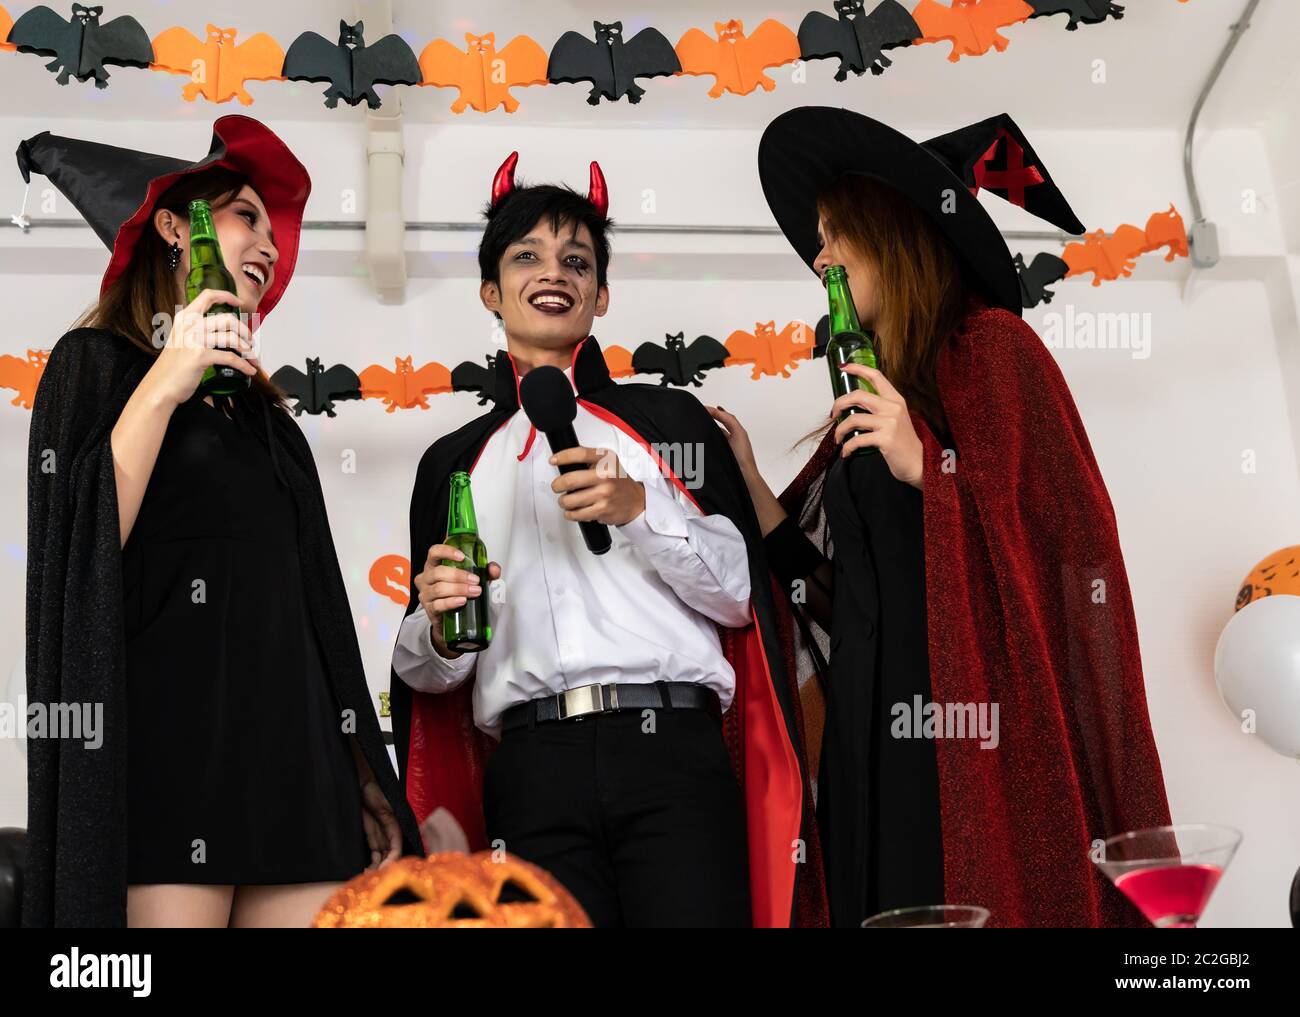 Gruppe für junge Erwachsene und jugendliche Menschen feiern eine Halloween  Party Karneval in Halloween Kostüme Alkohol Bier singen ein Lied ein  Stockfotografie - Alamy